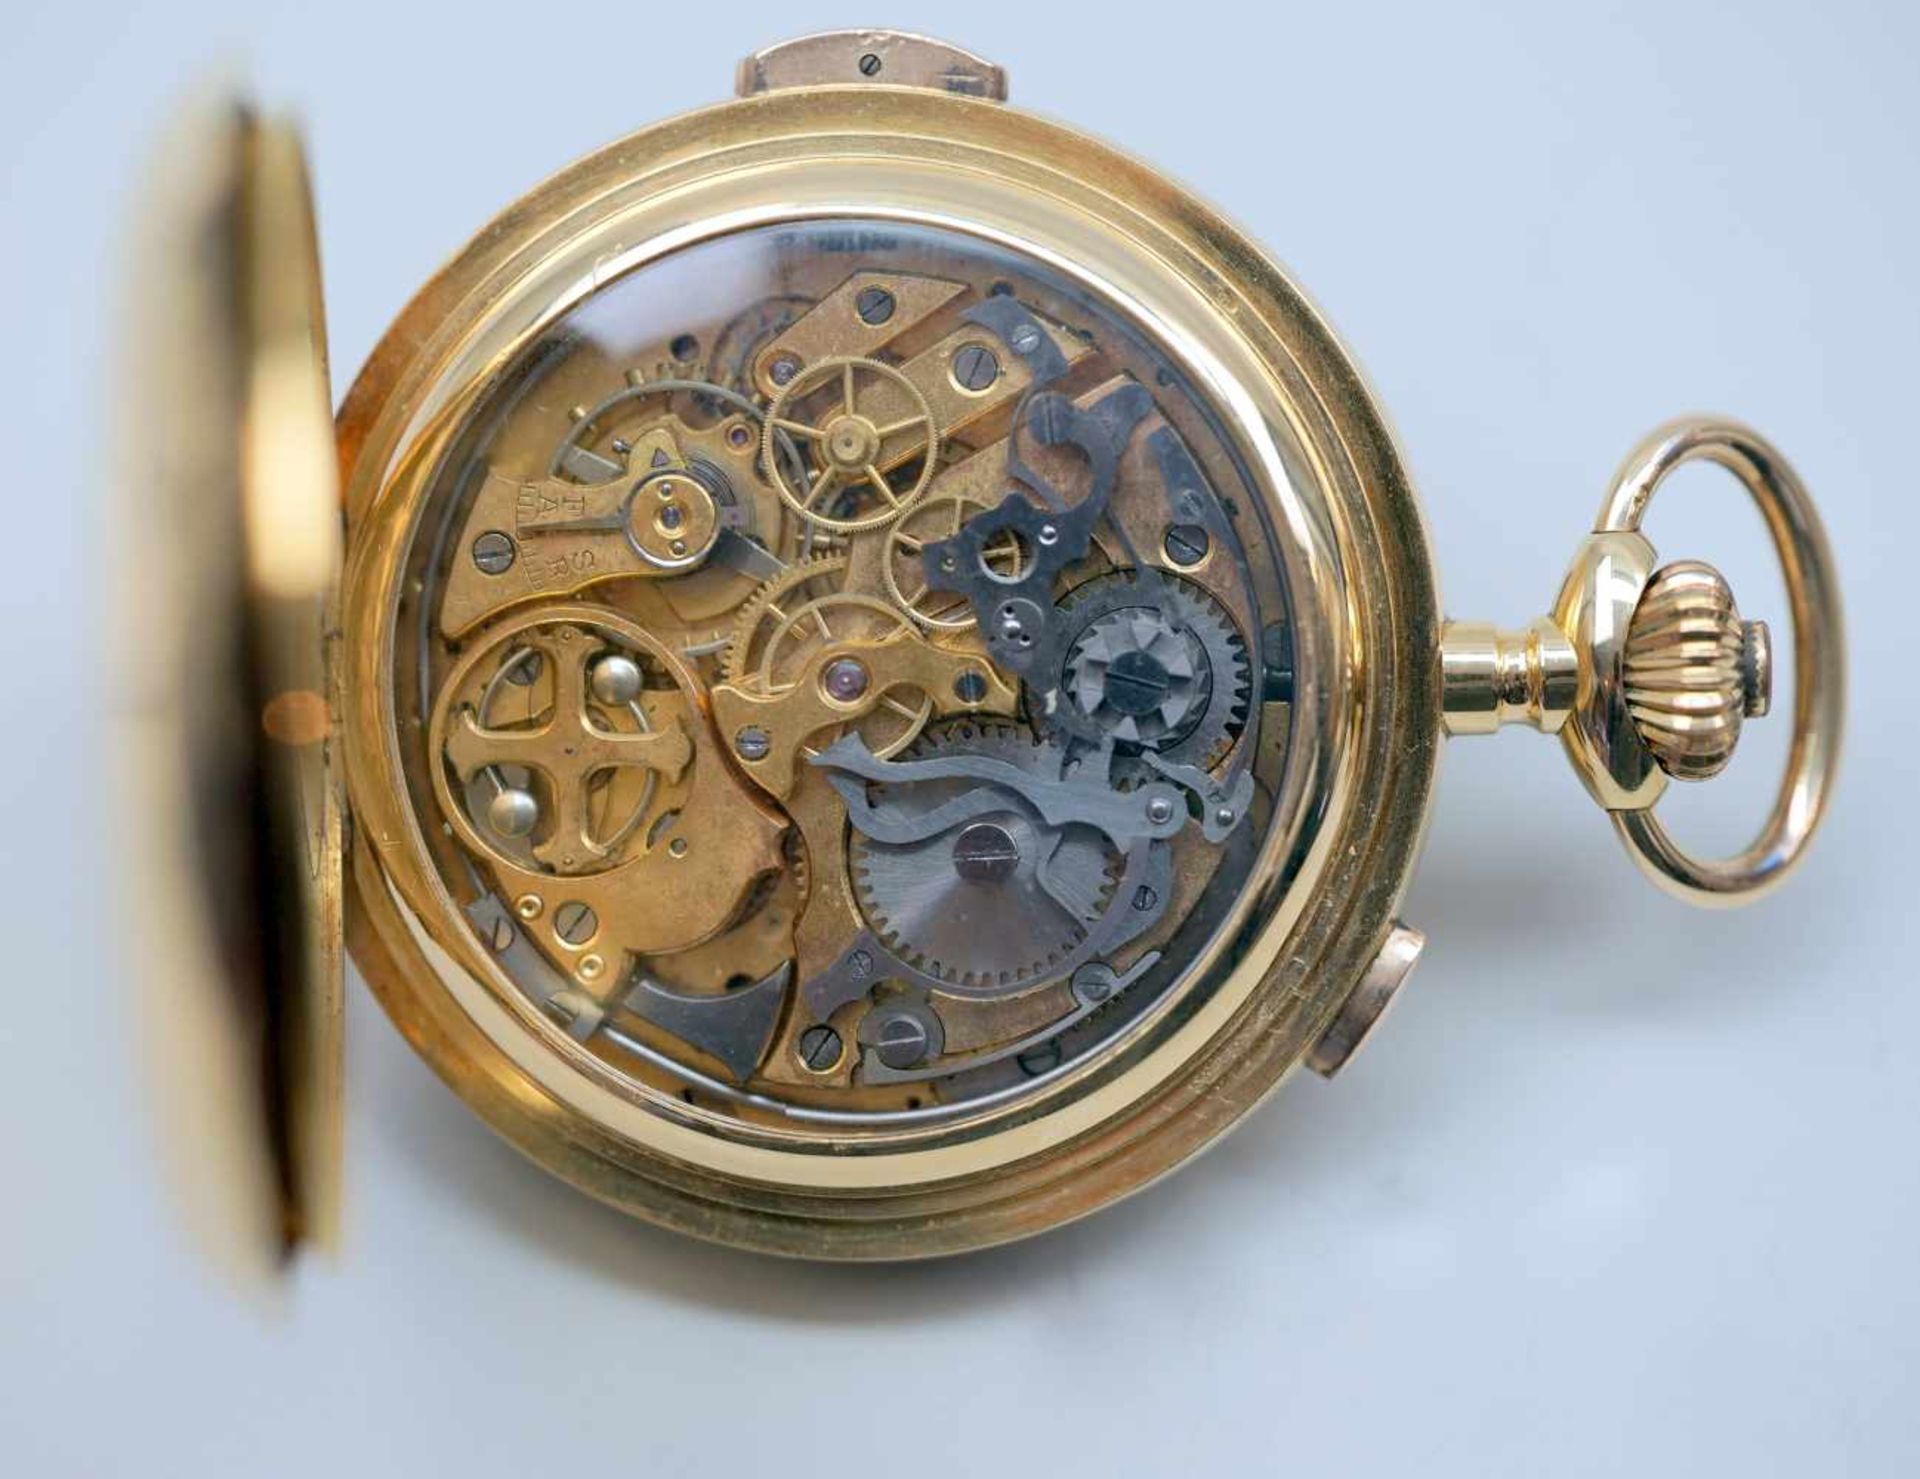 Große TaschenuhrGold. Große Taschenuhr mit drei Deckeln, Gold. Mit Mondphase, Tag sowie Datum und - Bild 4 aus 4